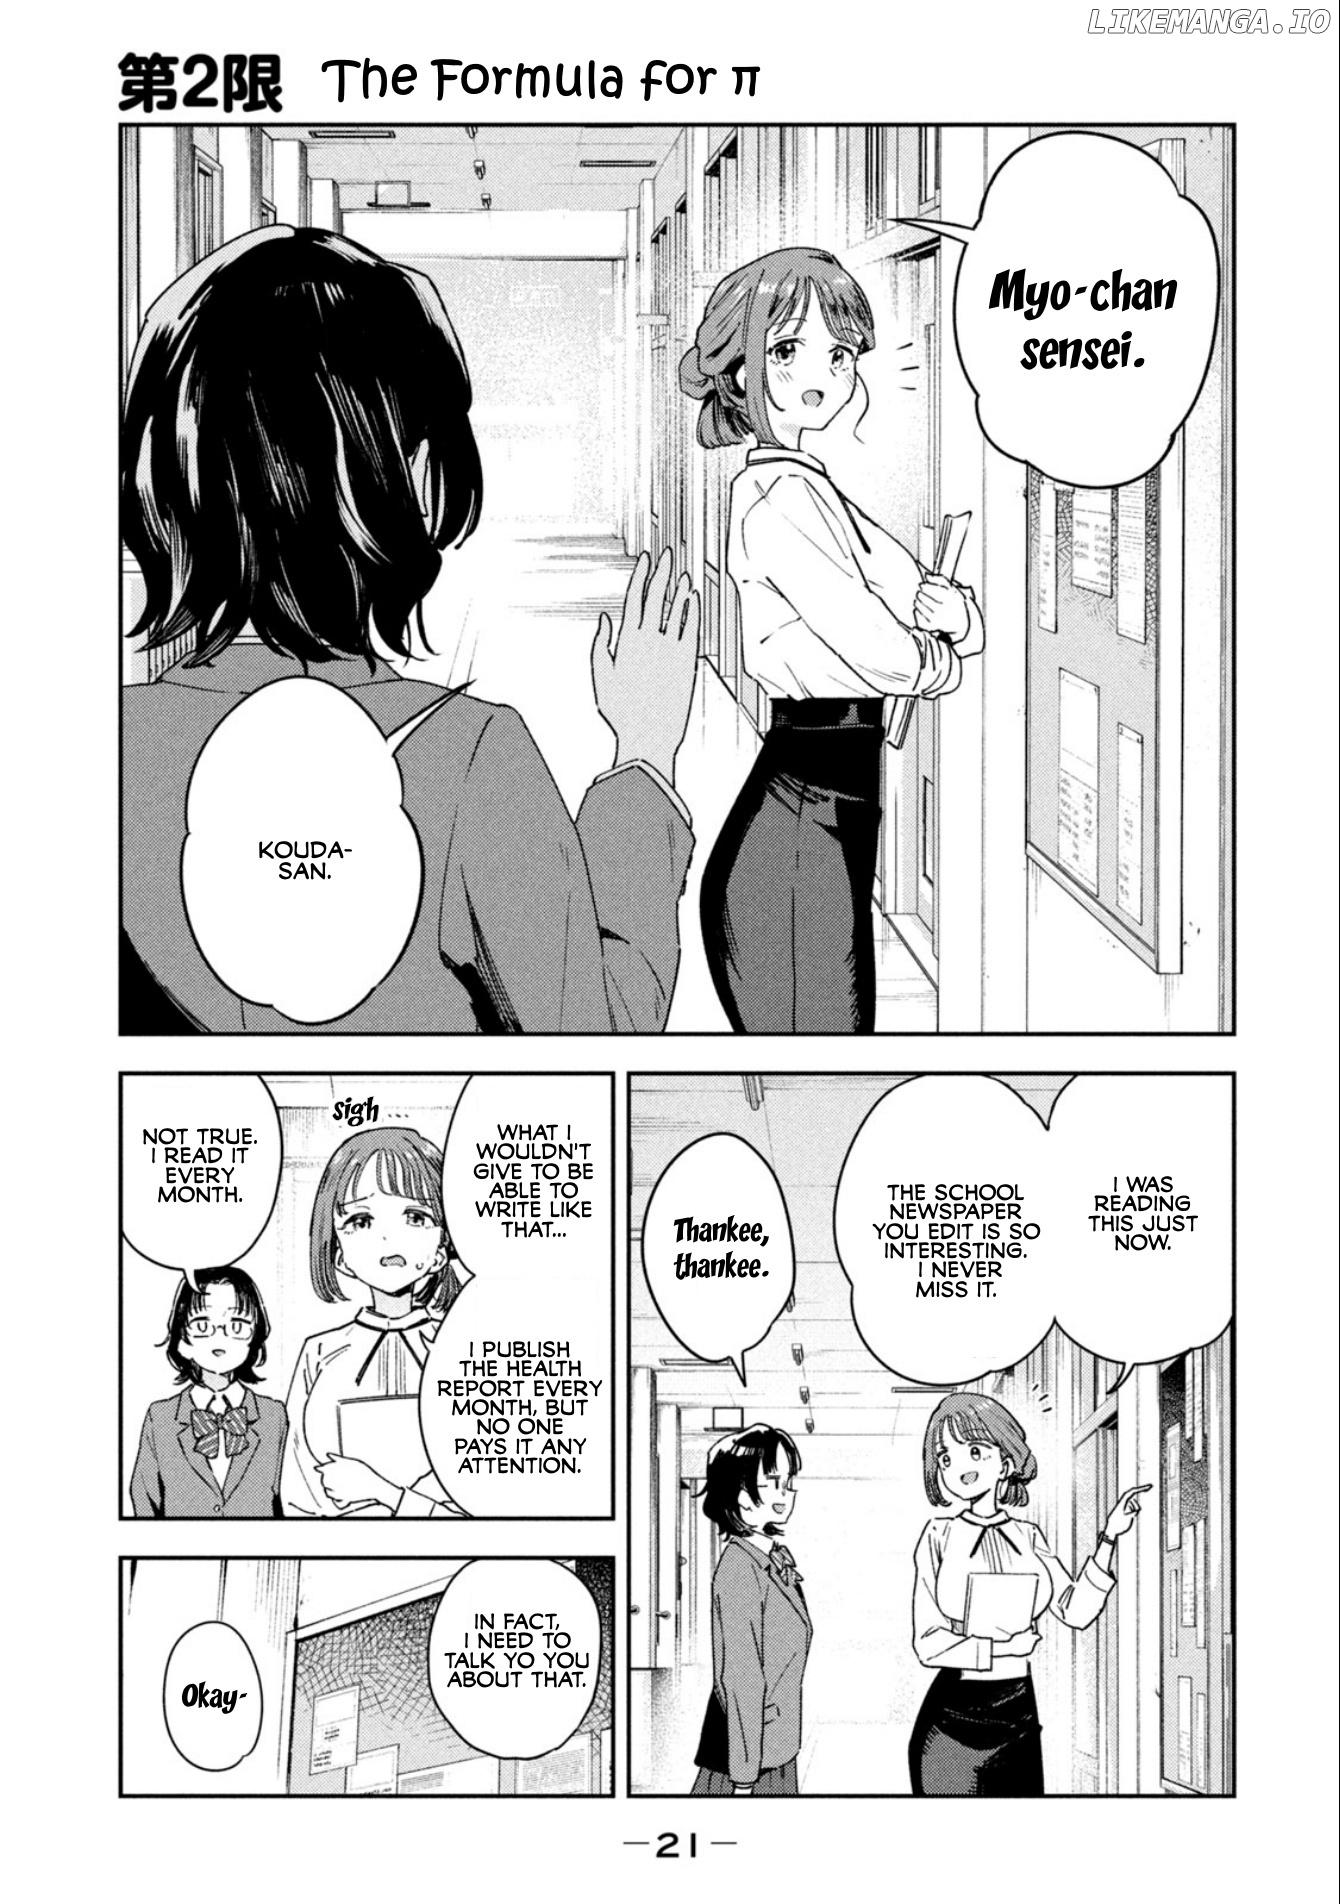 Miyo-Chan Sensei Said So chapter 2 - page 1